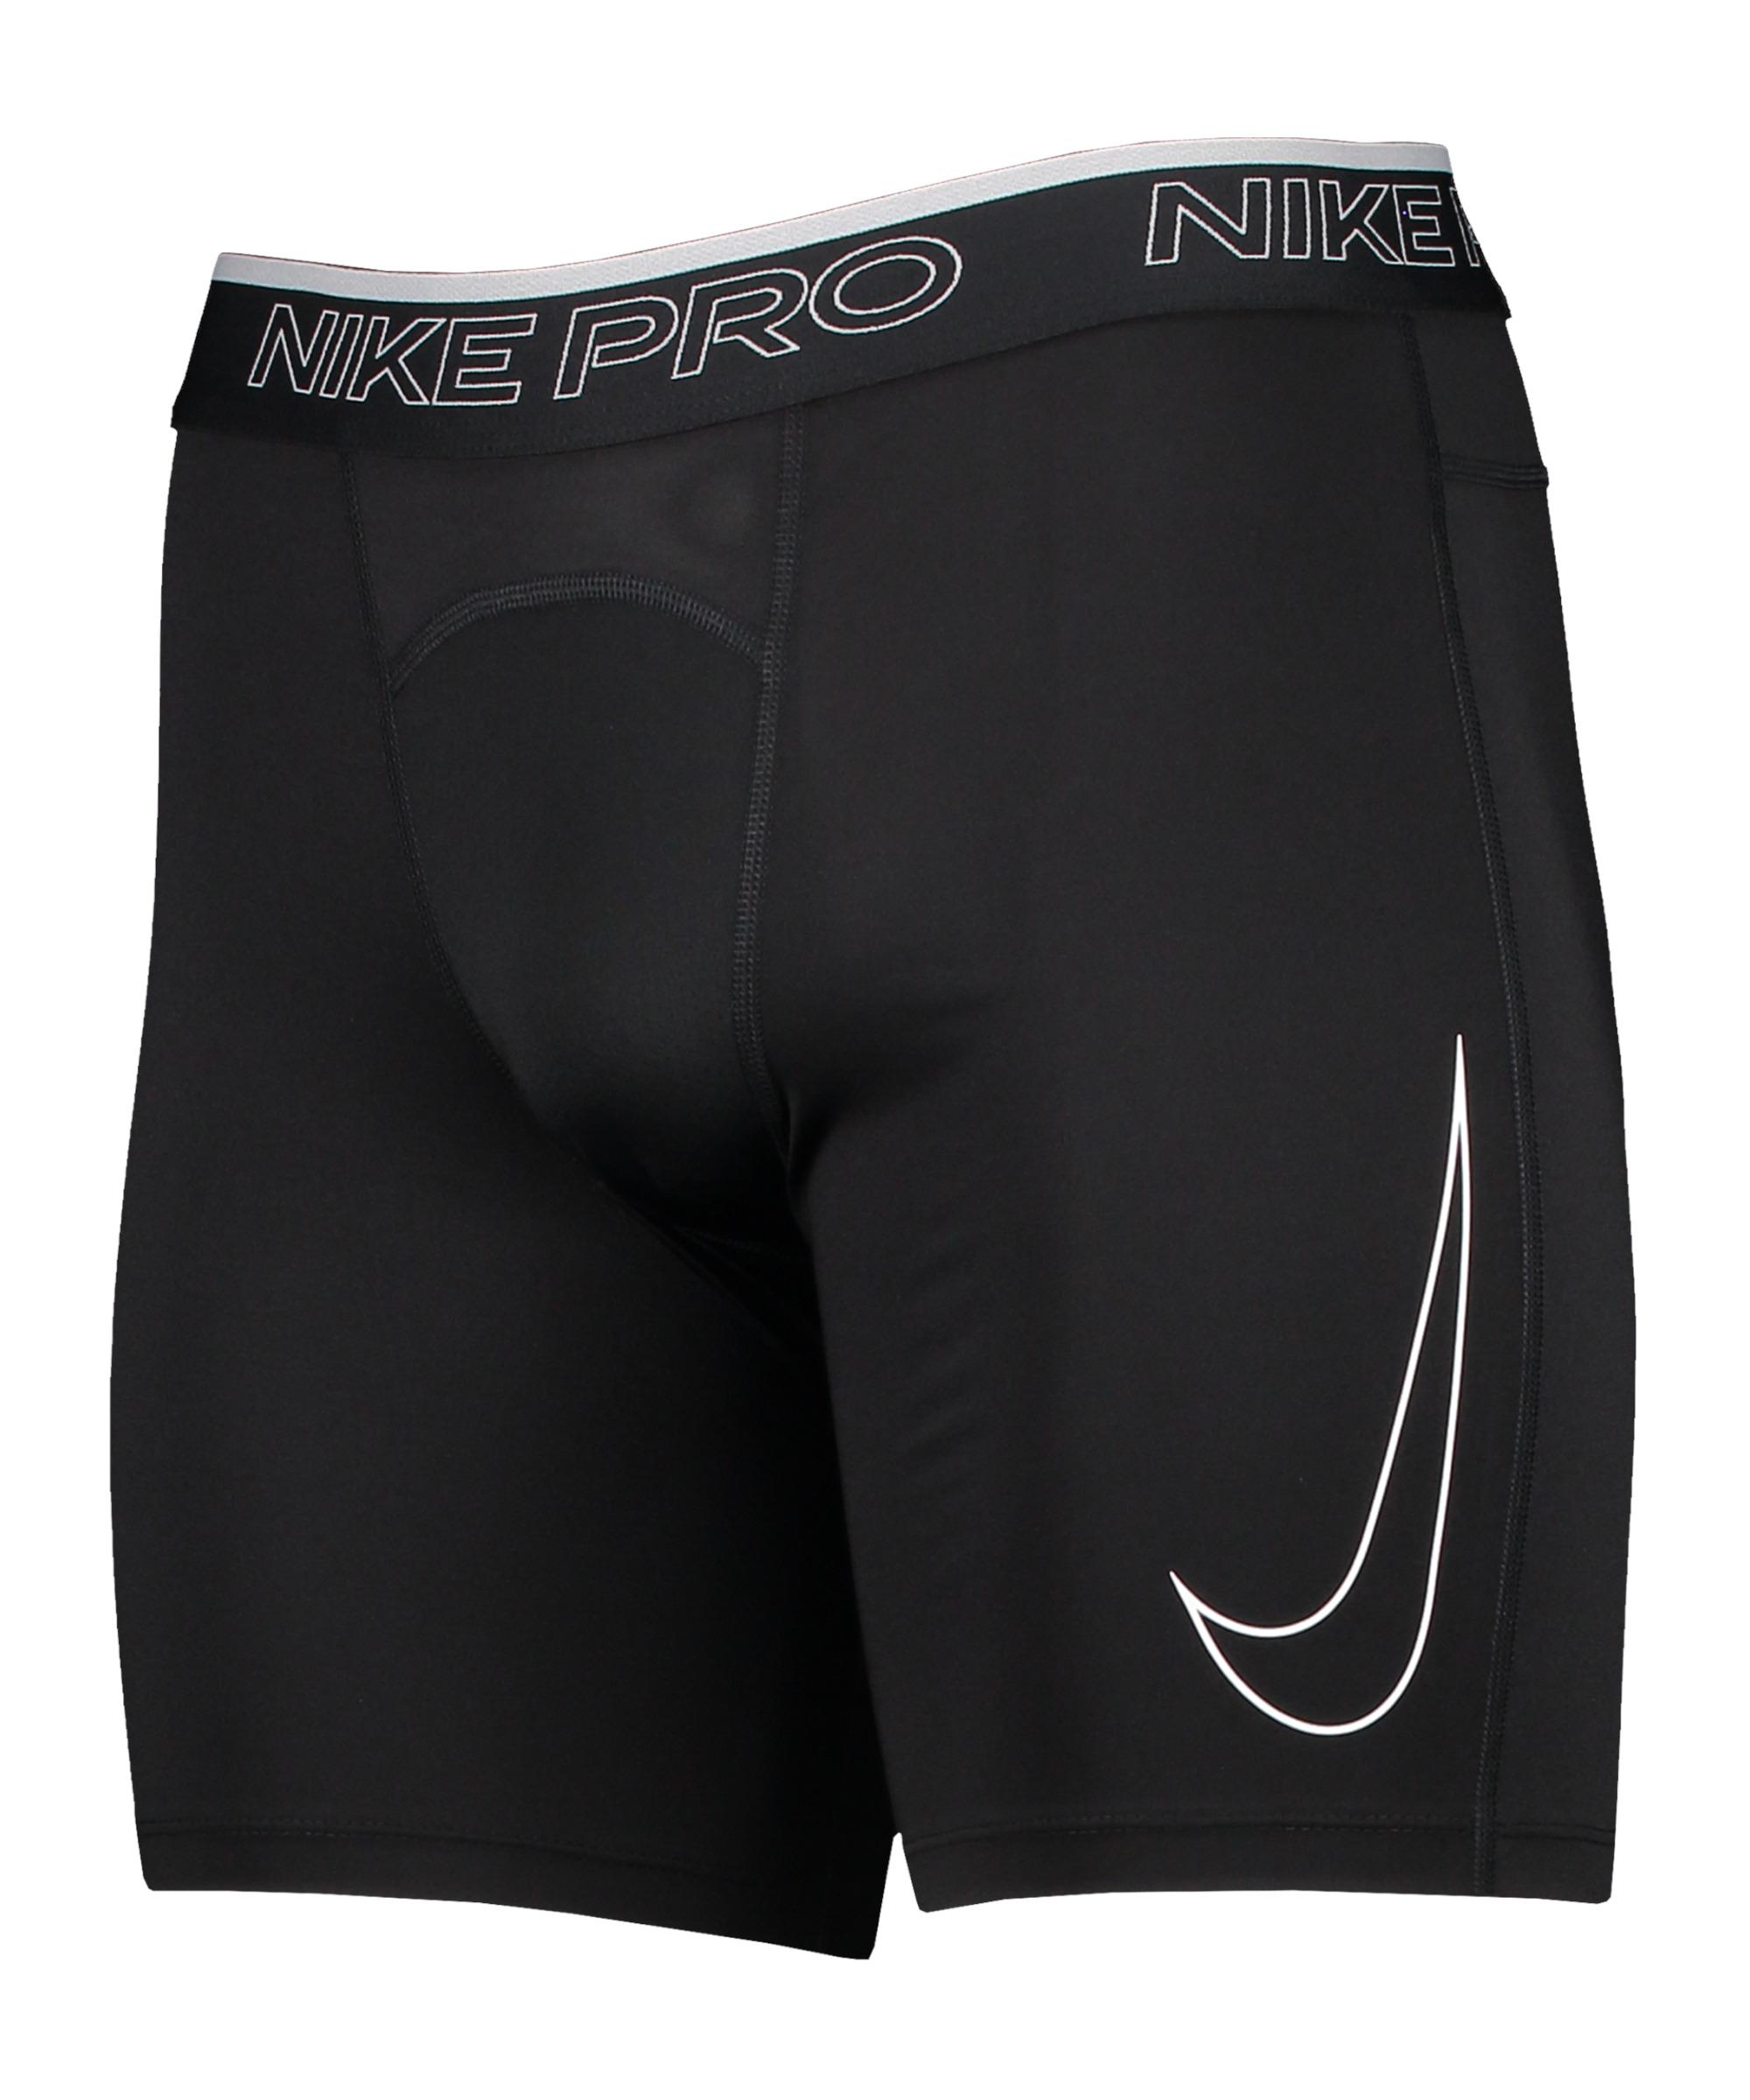 Nike Dri-Fit Pro Funktionsshorts Herren SportScheck von Shop im Online black-white kaufen